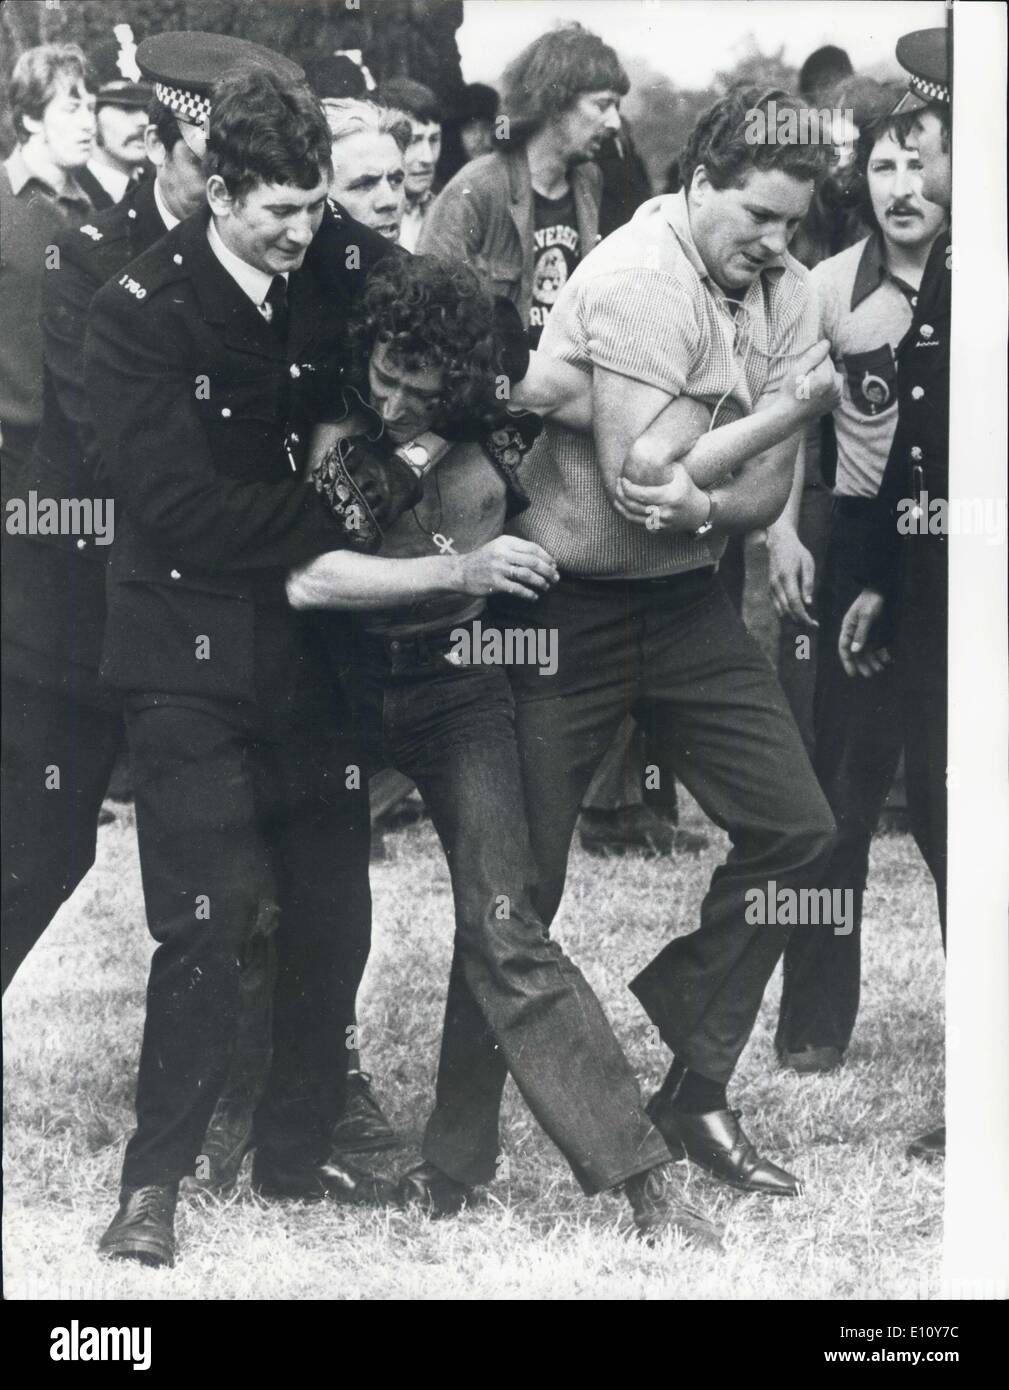 Il 30 agosto 1974 - 600 polizia si scontrano con i fan del genere pop in un ''Cancellare'' Raid al Windsor Great Park: più di 600 swooped di polizia su 2.000 hippies presso il Windsor Great Park Festival Pop e ordinò loro di ''Pack fino alle loro tende e andare". Alcuni obbedito alla fine, ma molti di loro hanno resistito. Una scena di isteria scoppiata a seguito della c;cenere fra la polizia e i tifosi pop. Molte persone sono state ferite, tra cui poliziotti e molti arresti sono stati effettuati. La foto mostra la polizia in lotta con una ventola pop ieri, durante la scontro in Windsor Great Park. Foto Stock